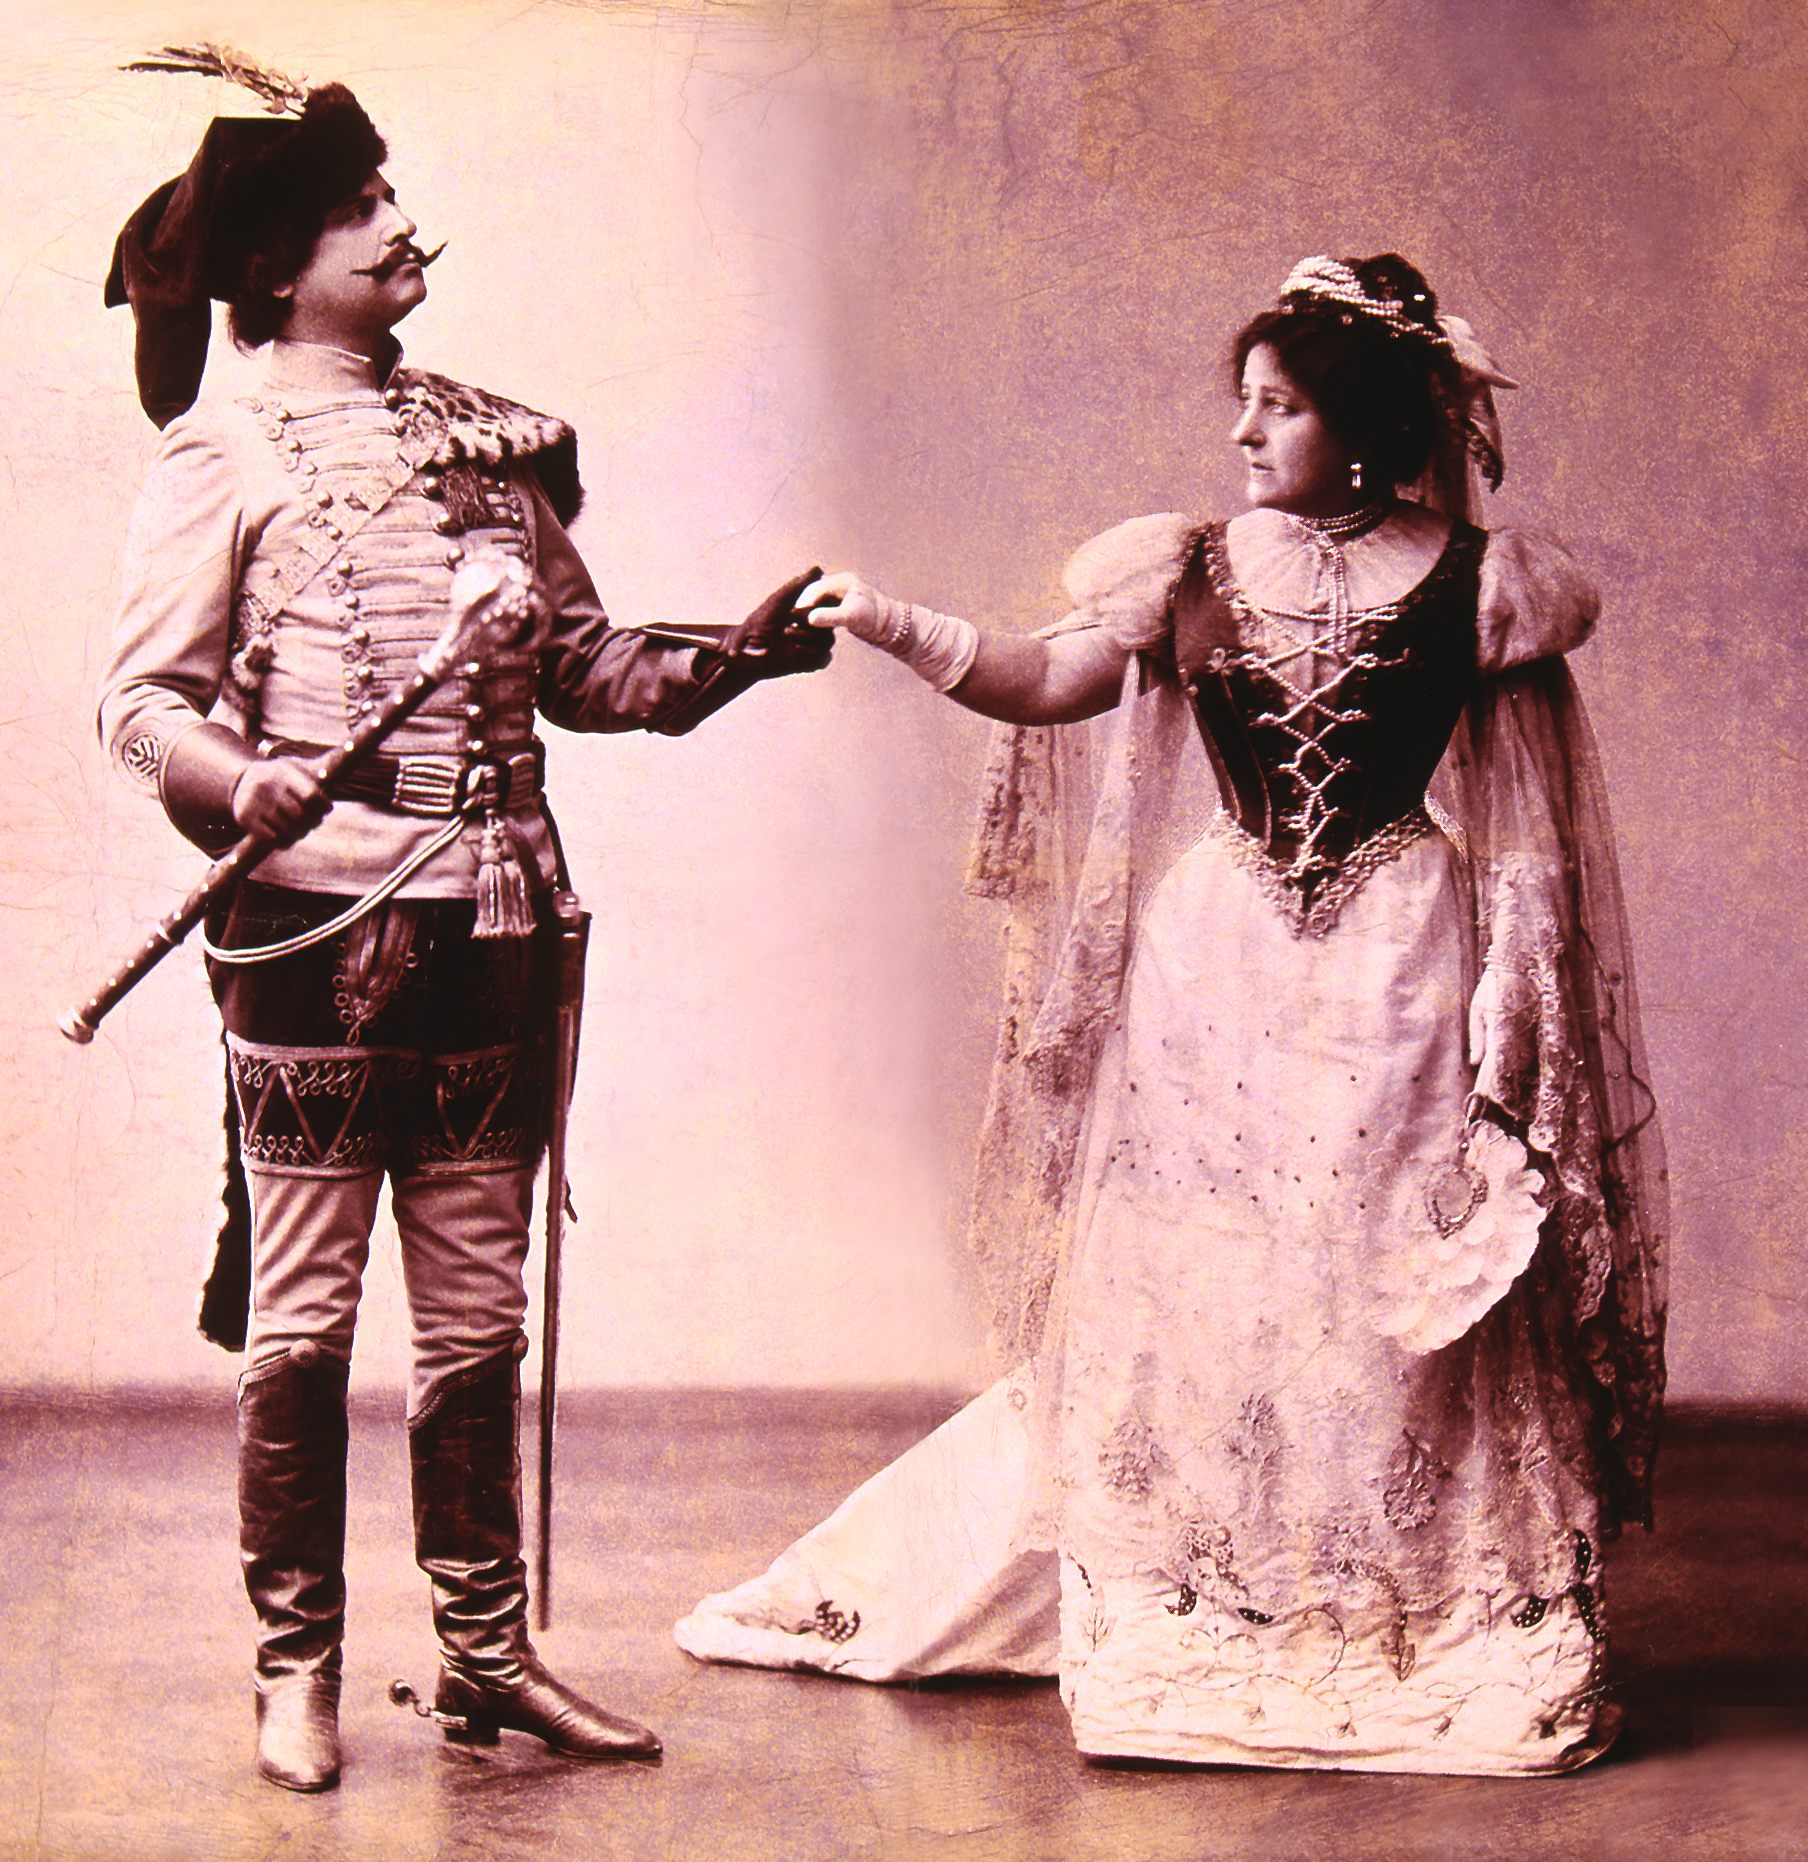 Fenyvesi Emil mint Ocskay László és Csillag Teréz mint Tisza Ilona Herczeg Ferenc Ocskay brigadéros című történelmi színművében